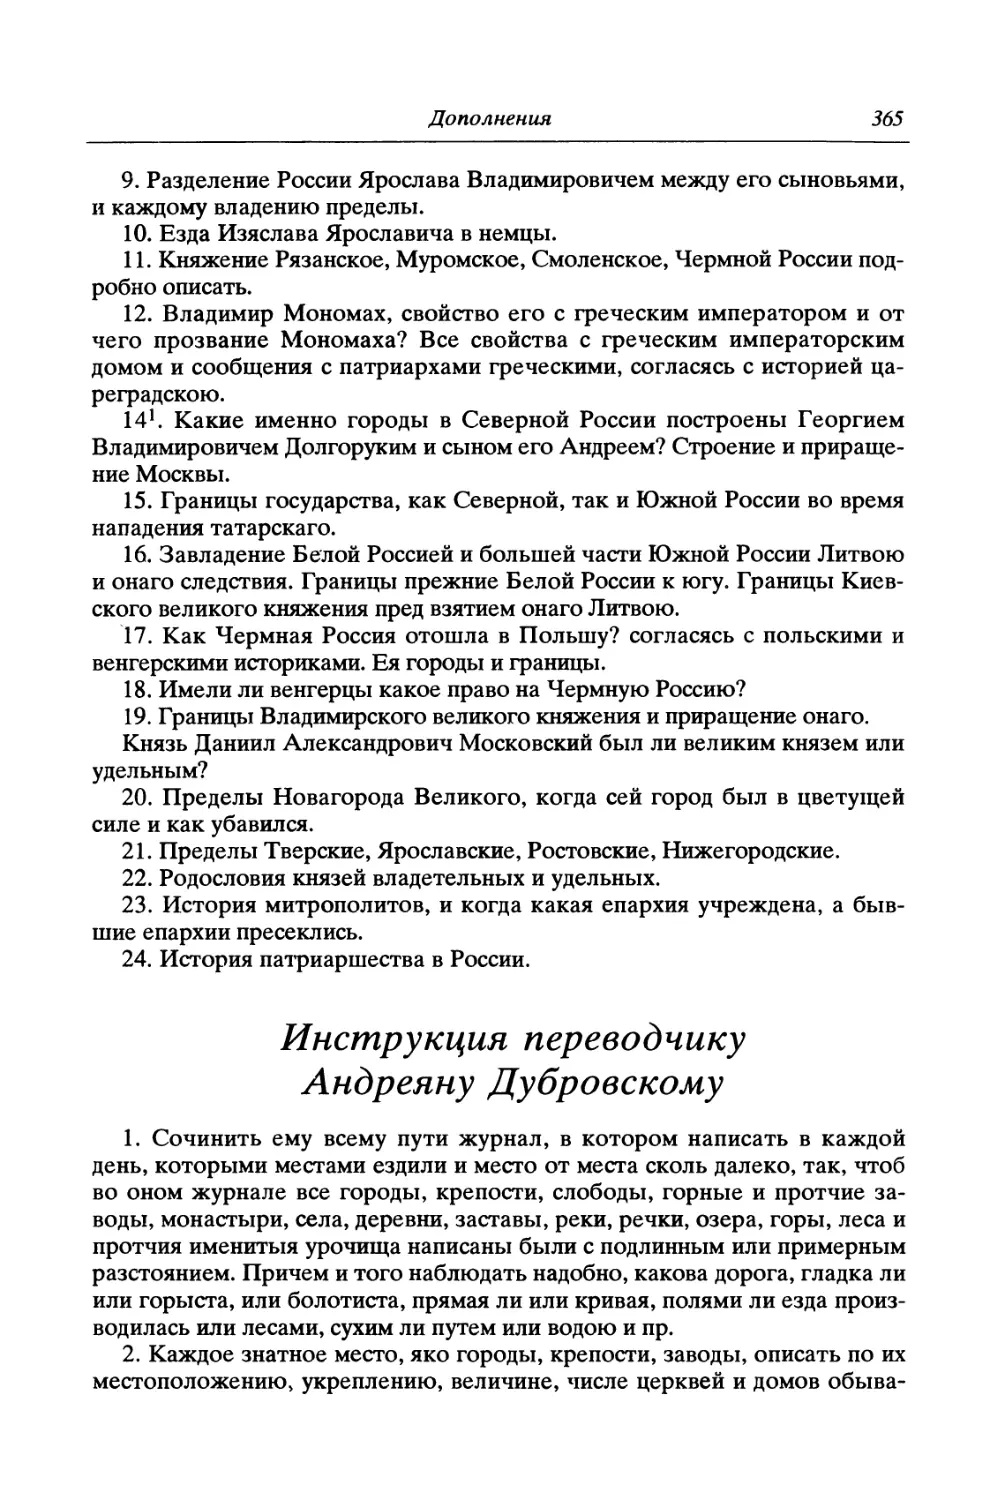 Инструкция переводчику Андреяну Дубровскому